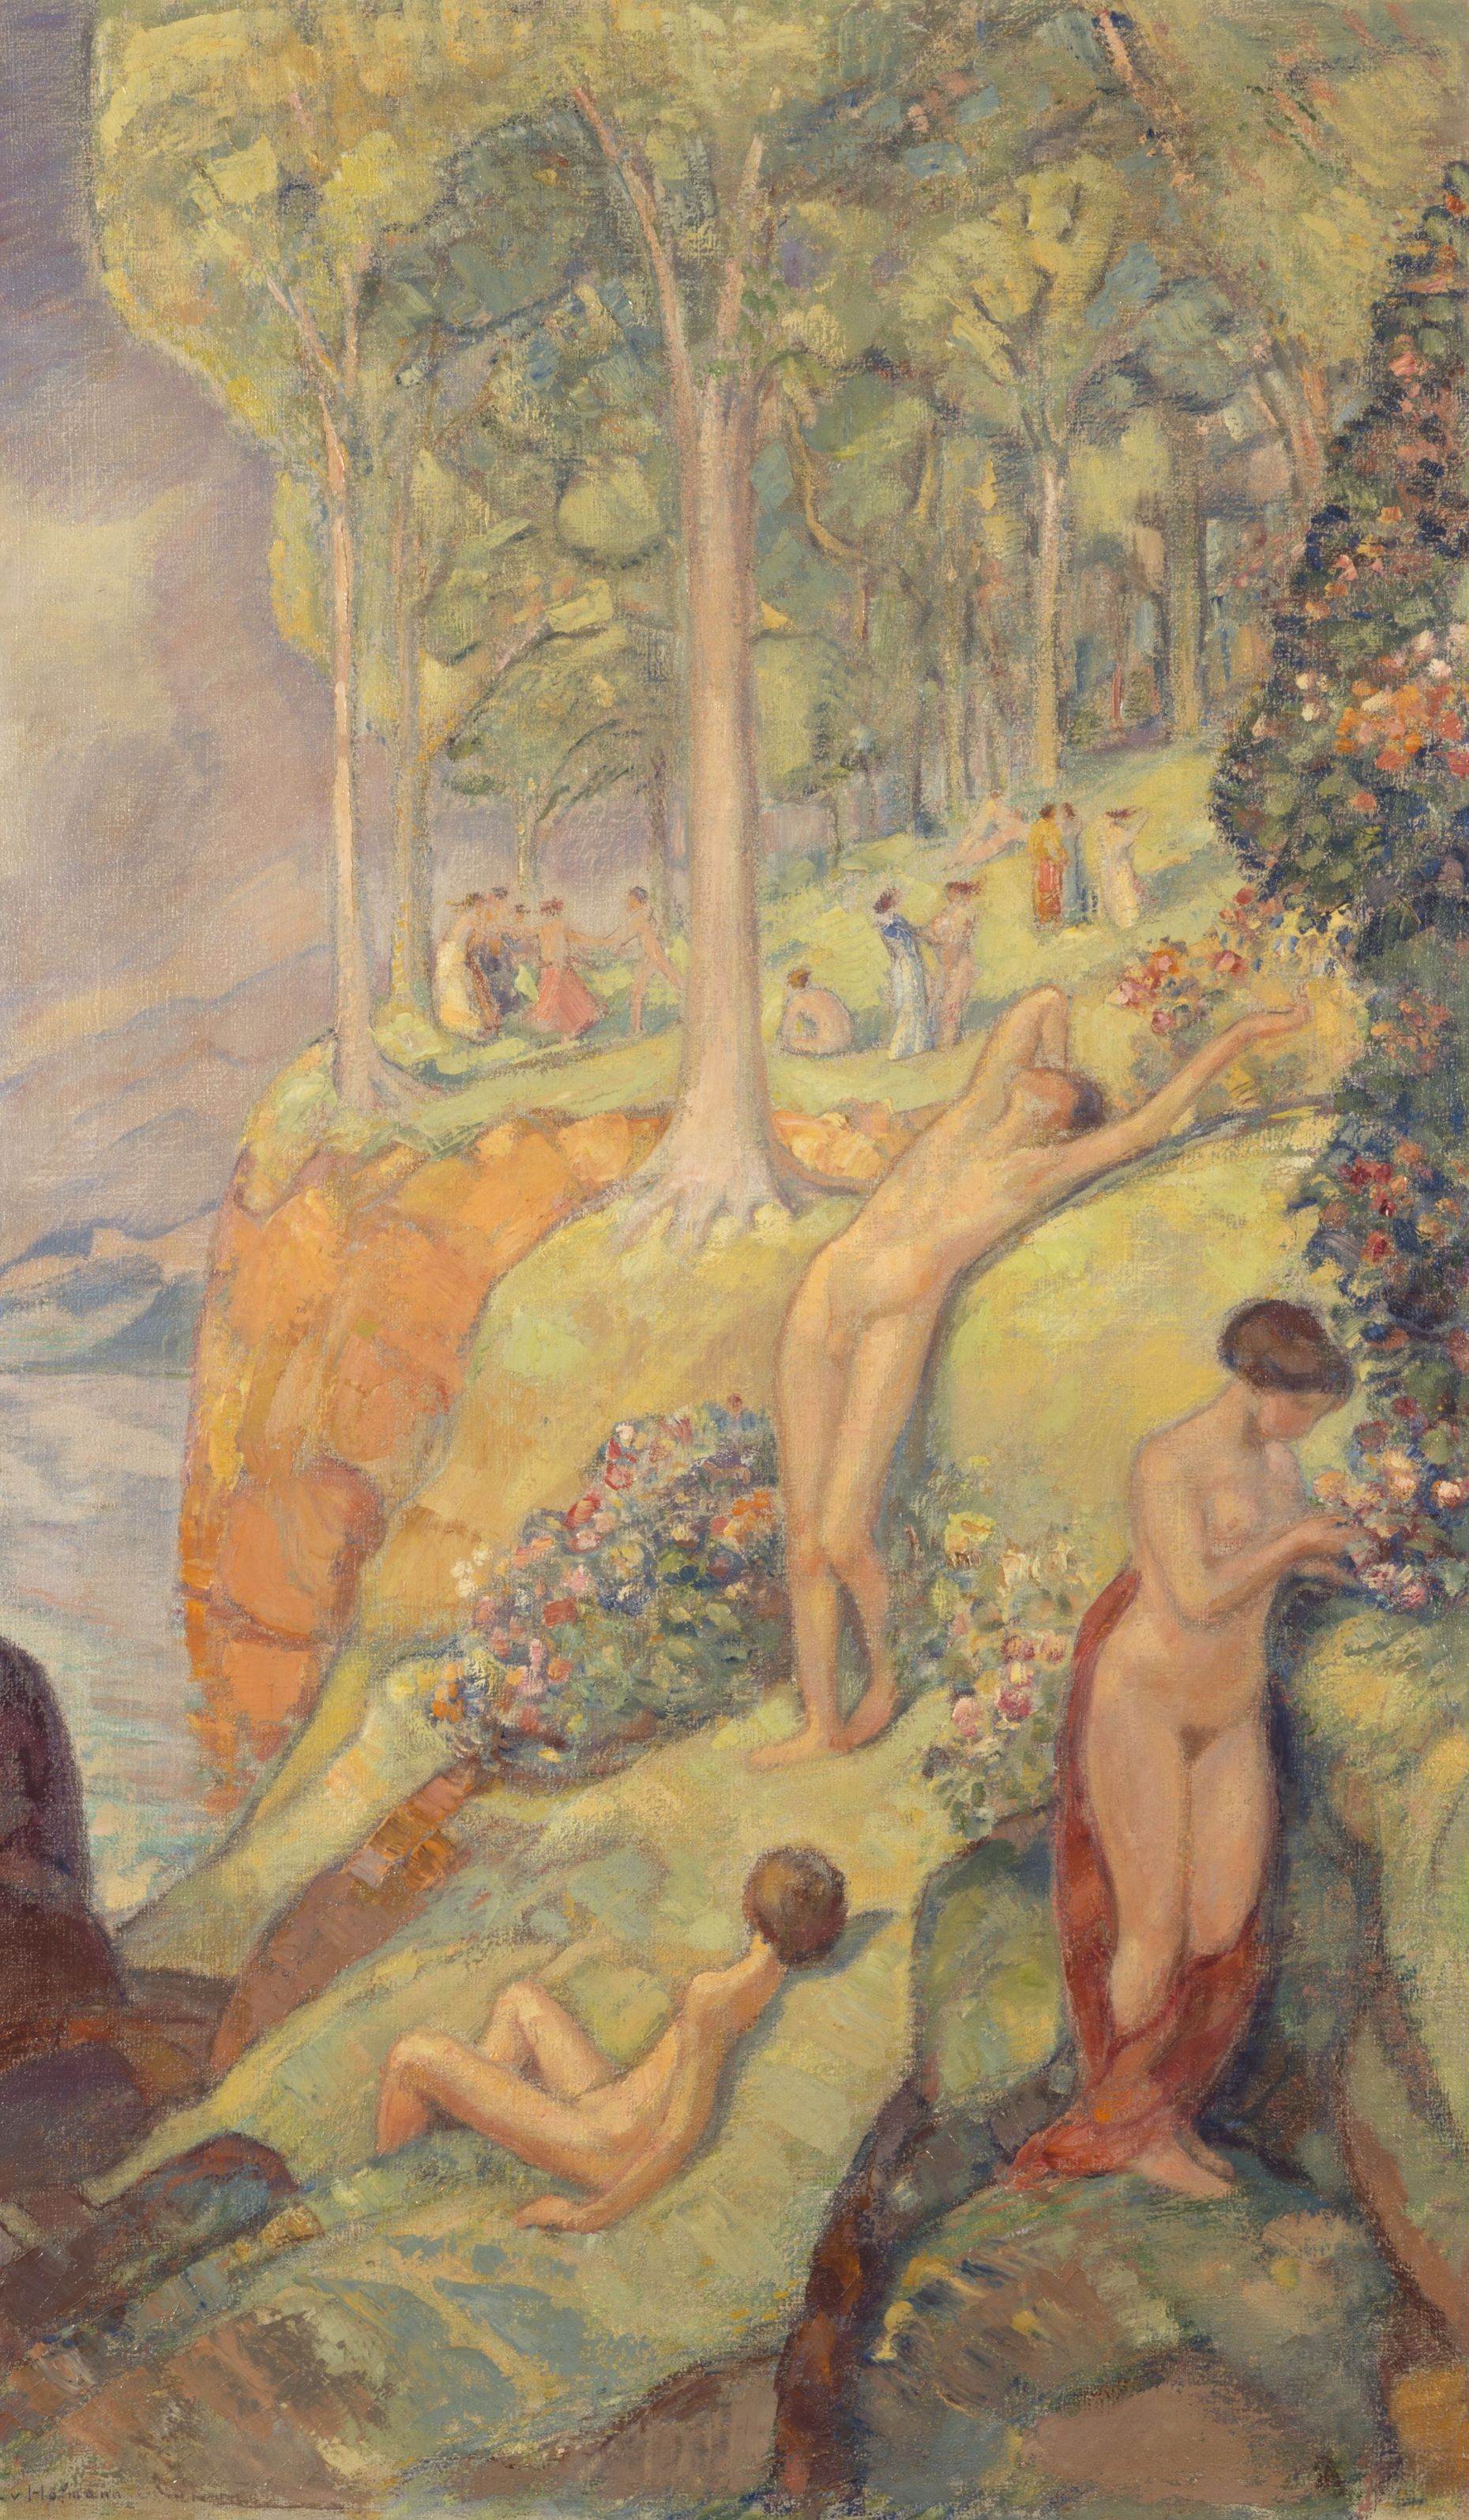 Gemälde von Ludwig von Hofmann, Öl auf Leinwand, 146 x 86 cm